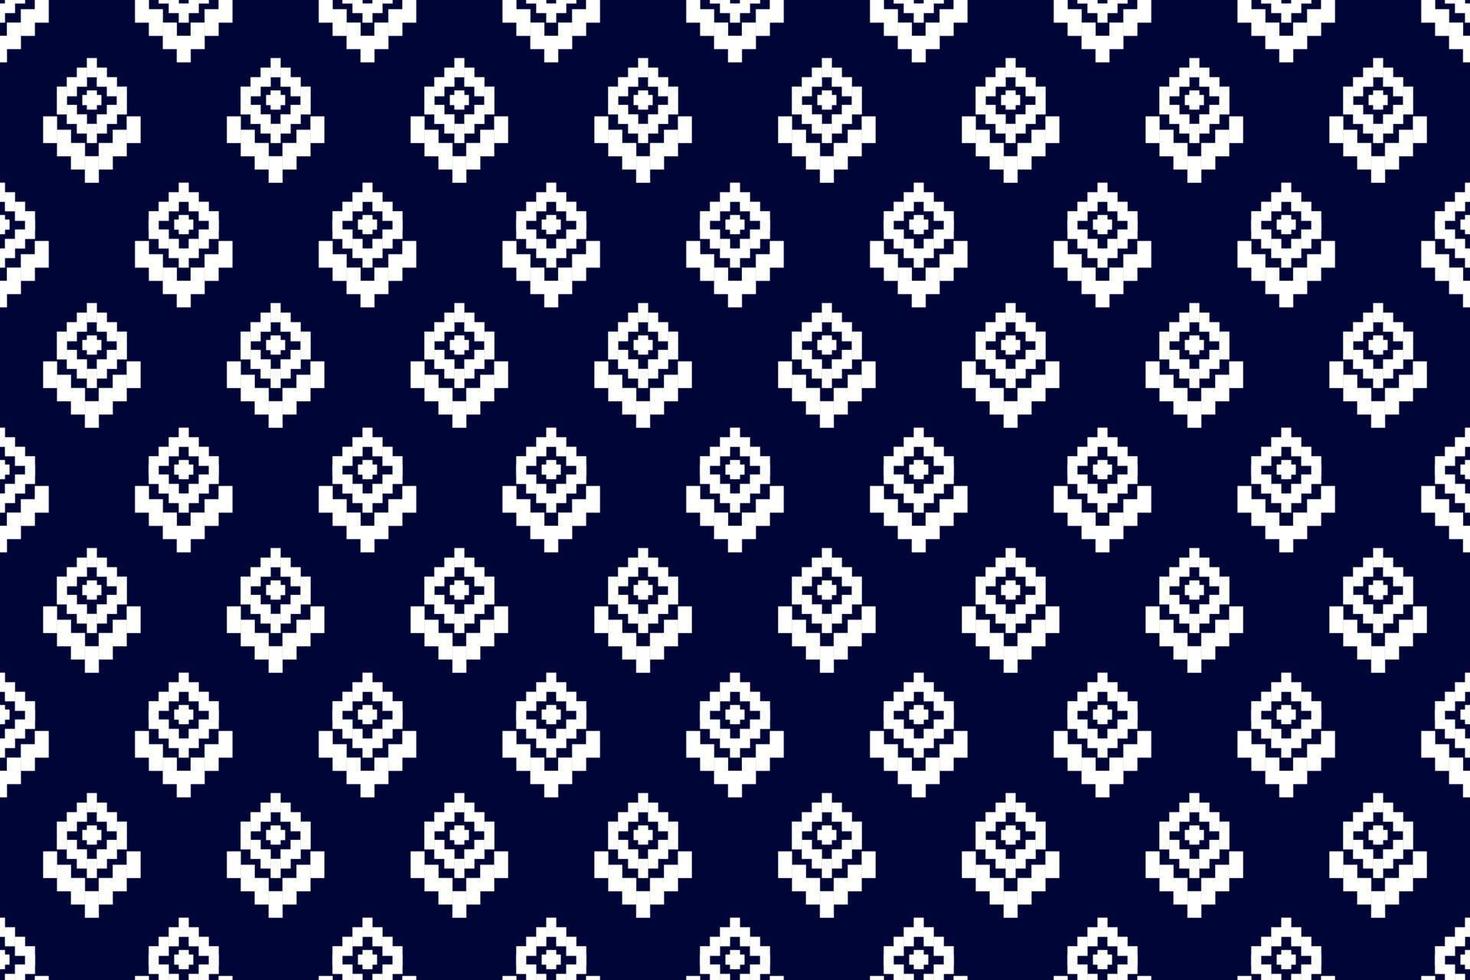 patrón étnico azteca sin fisuras. patrón geométrico en tribal. diseño para fondo, papel tapiz, ilustración vectorial, textil, tela, ropa, batik, alfombra, bordado. vector